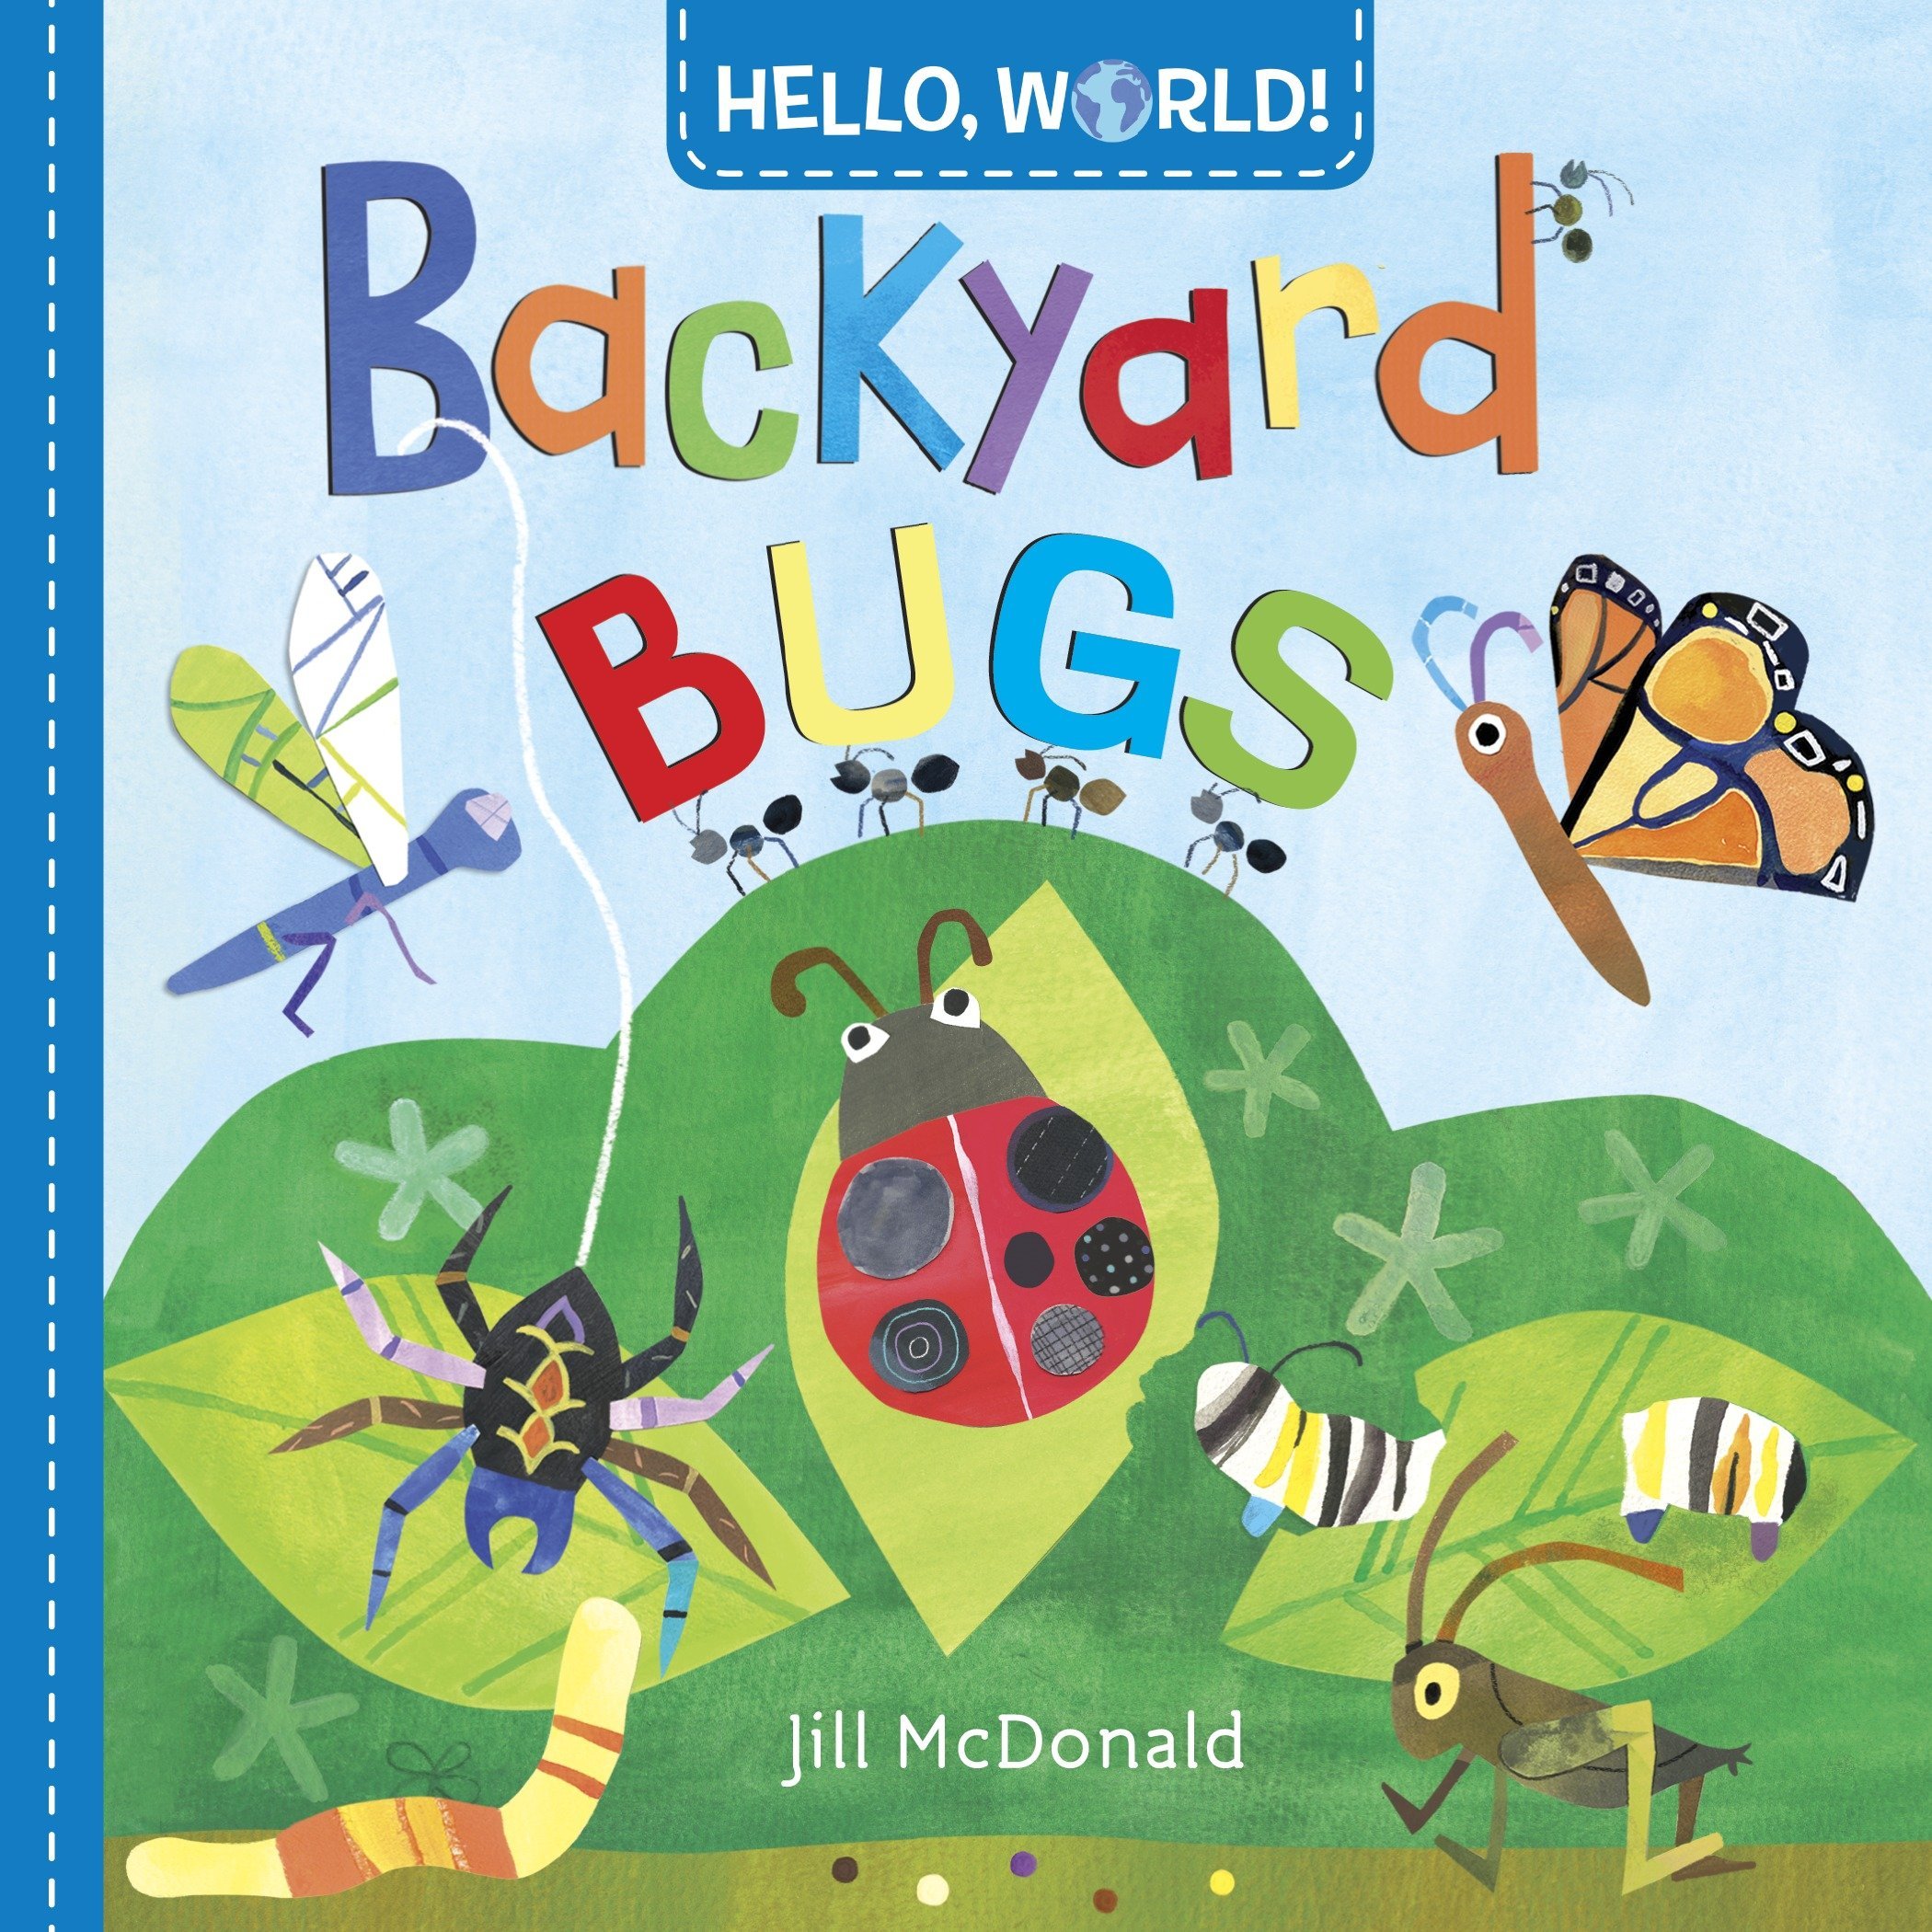 Hello, World! Backyard Bugs